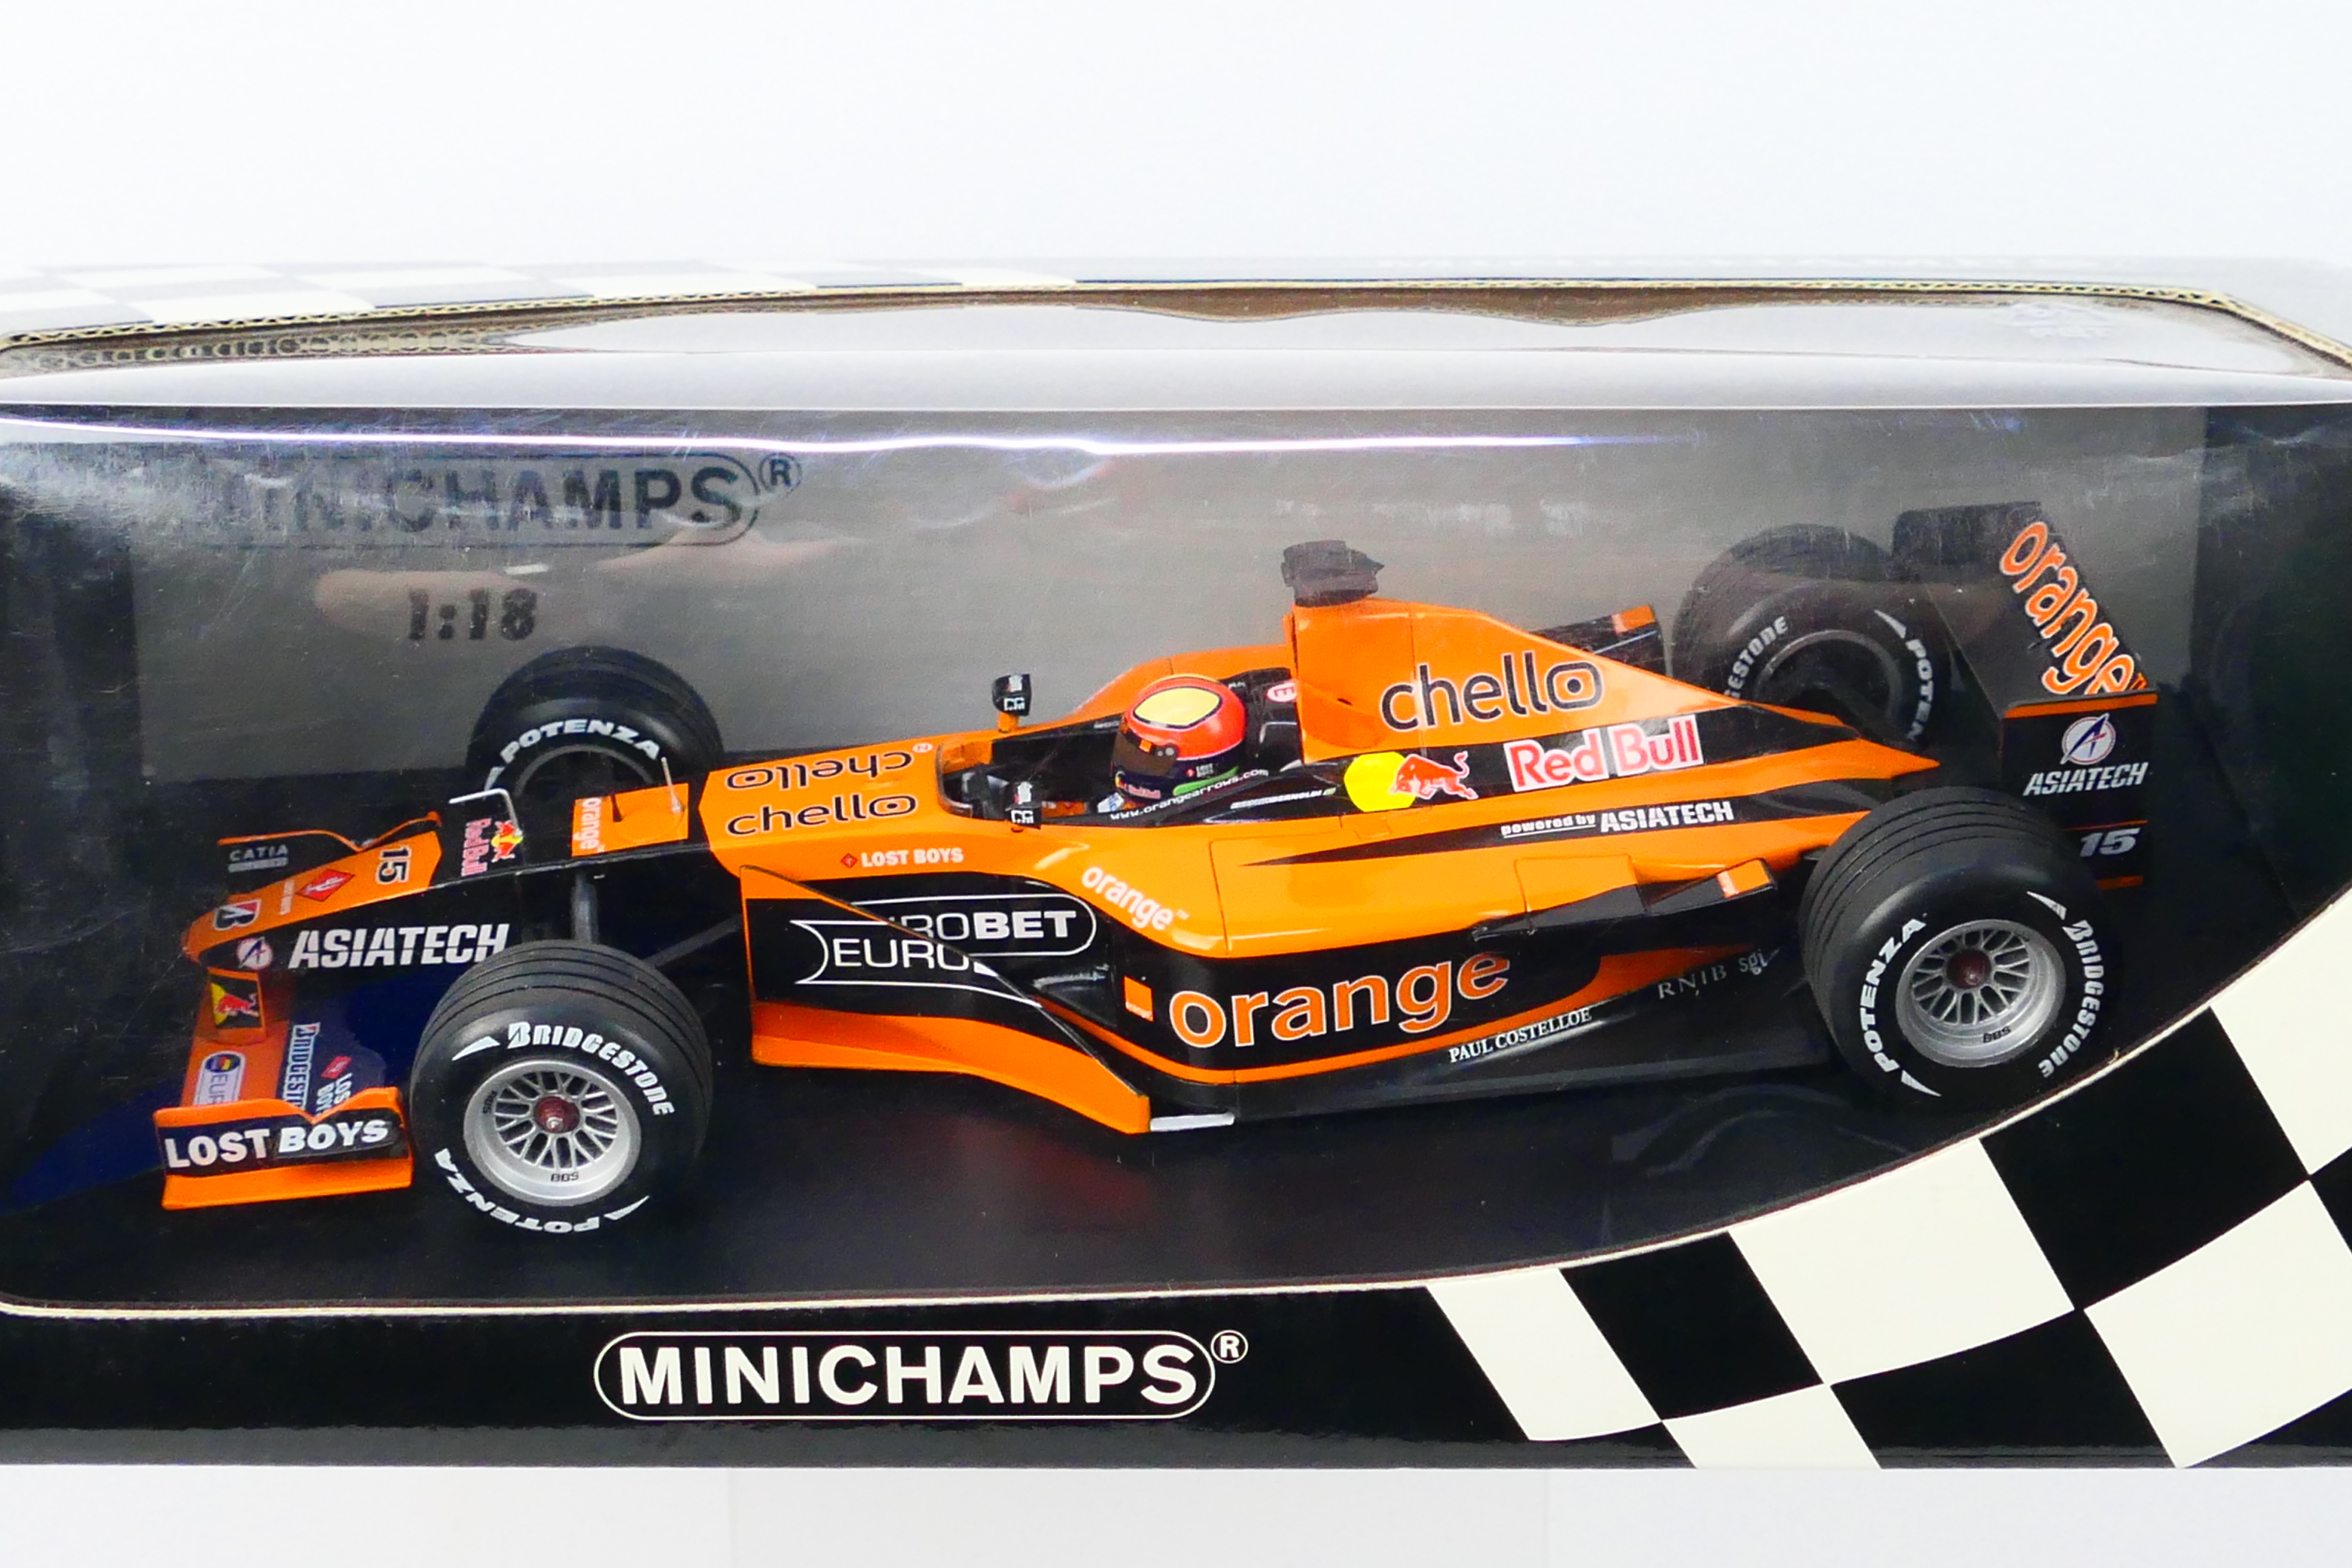 Minichamps- A boxed 1:18 scale Orange Arrows Asiatech A22 Enrique Bernoldi car which appears Mint - Image 2 of 3